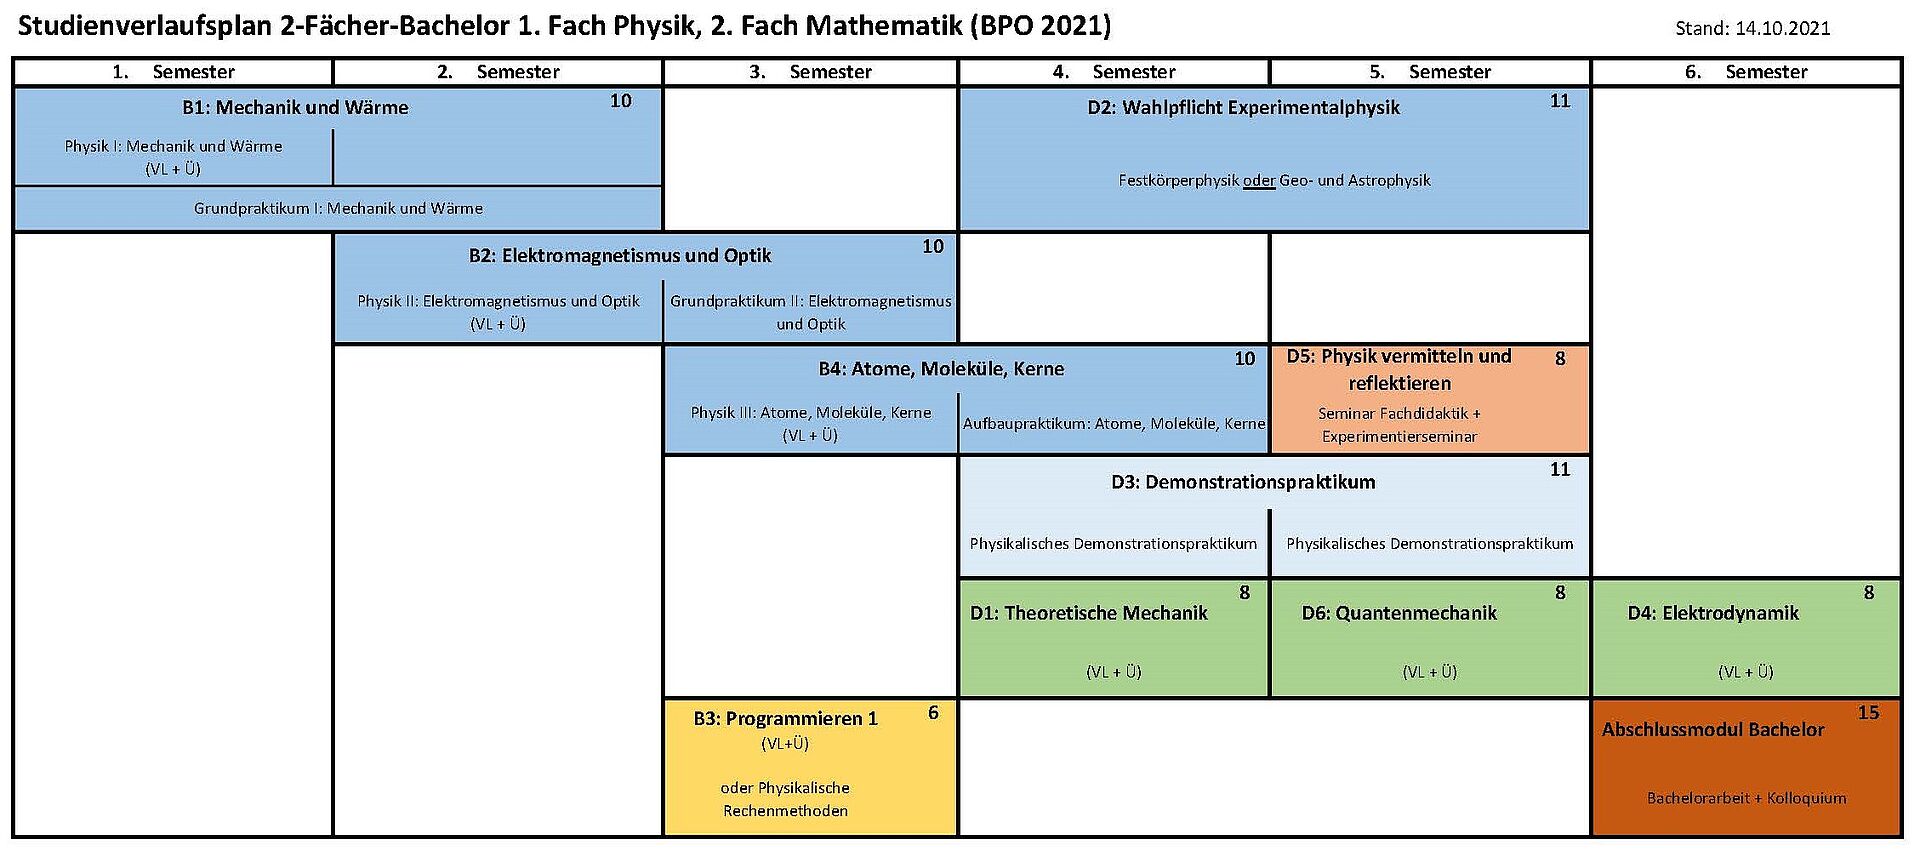 Musterstudienverlaufsplan 2-Fächer Bachelor 1. Fach Physik, 2. Fach Mathe (BPO 2021)